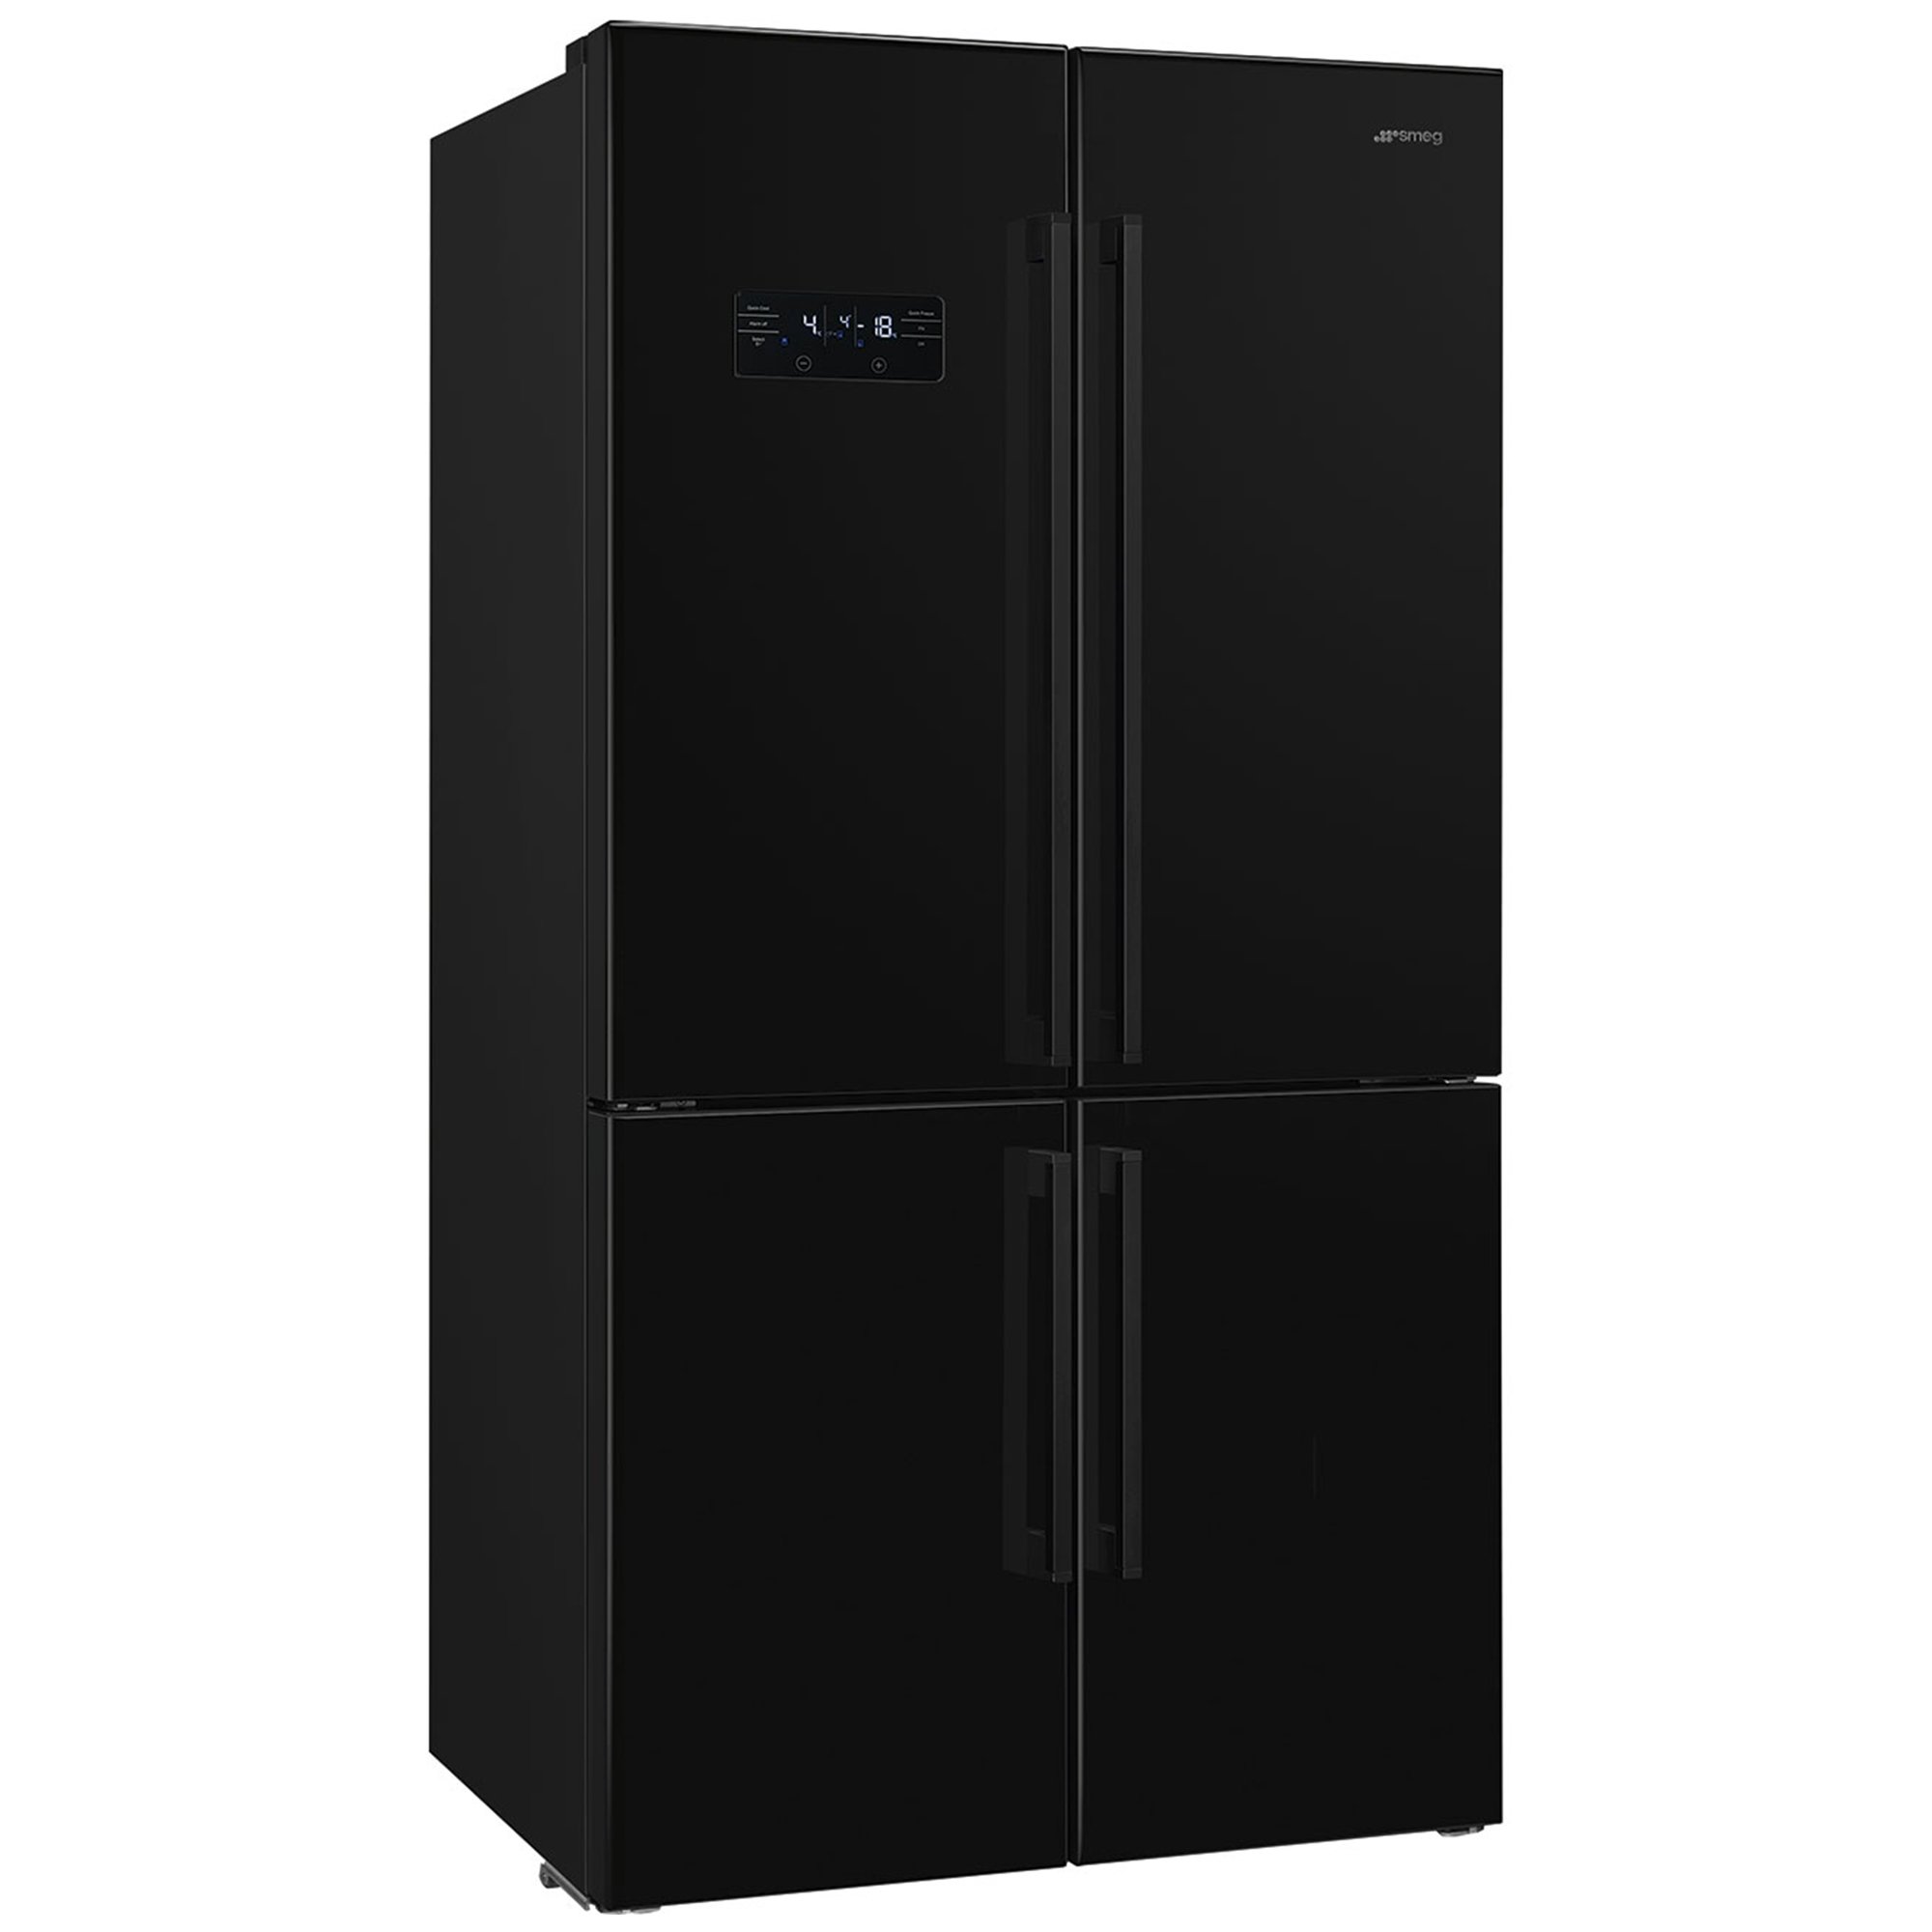 Smeg French Door kjøleskap/fryser 92 cm, svart Kjøle - Fryseskap